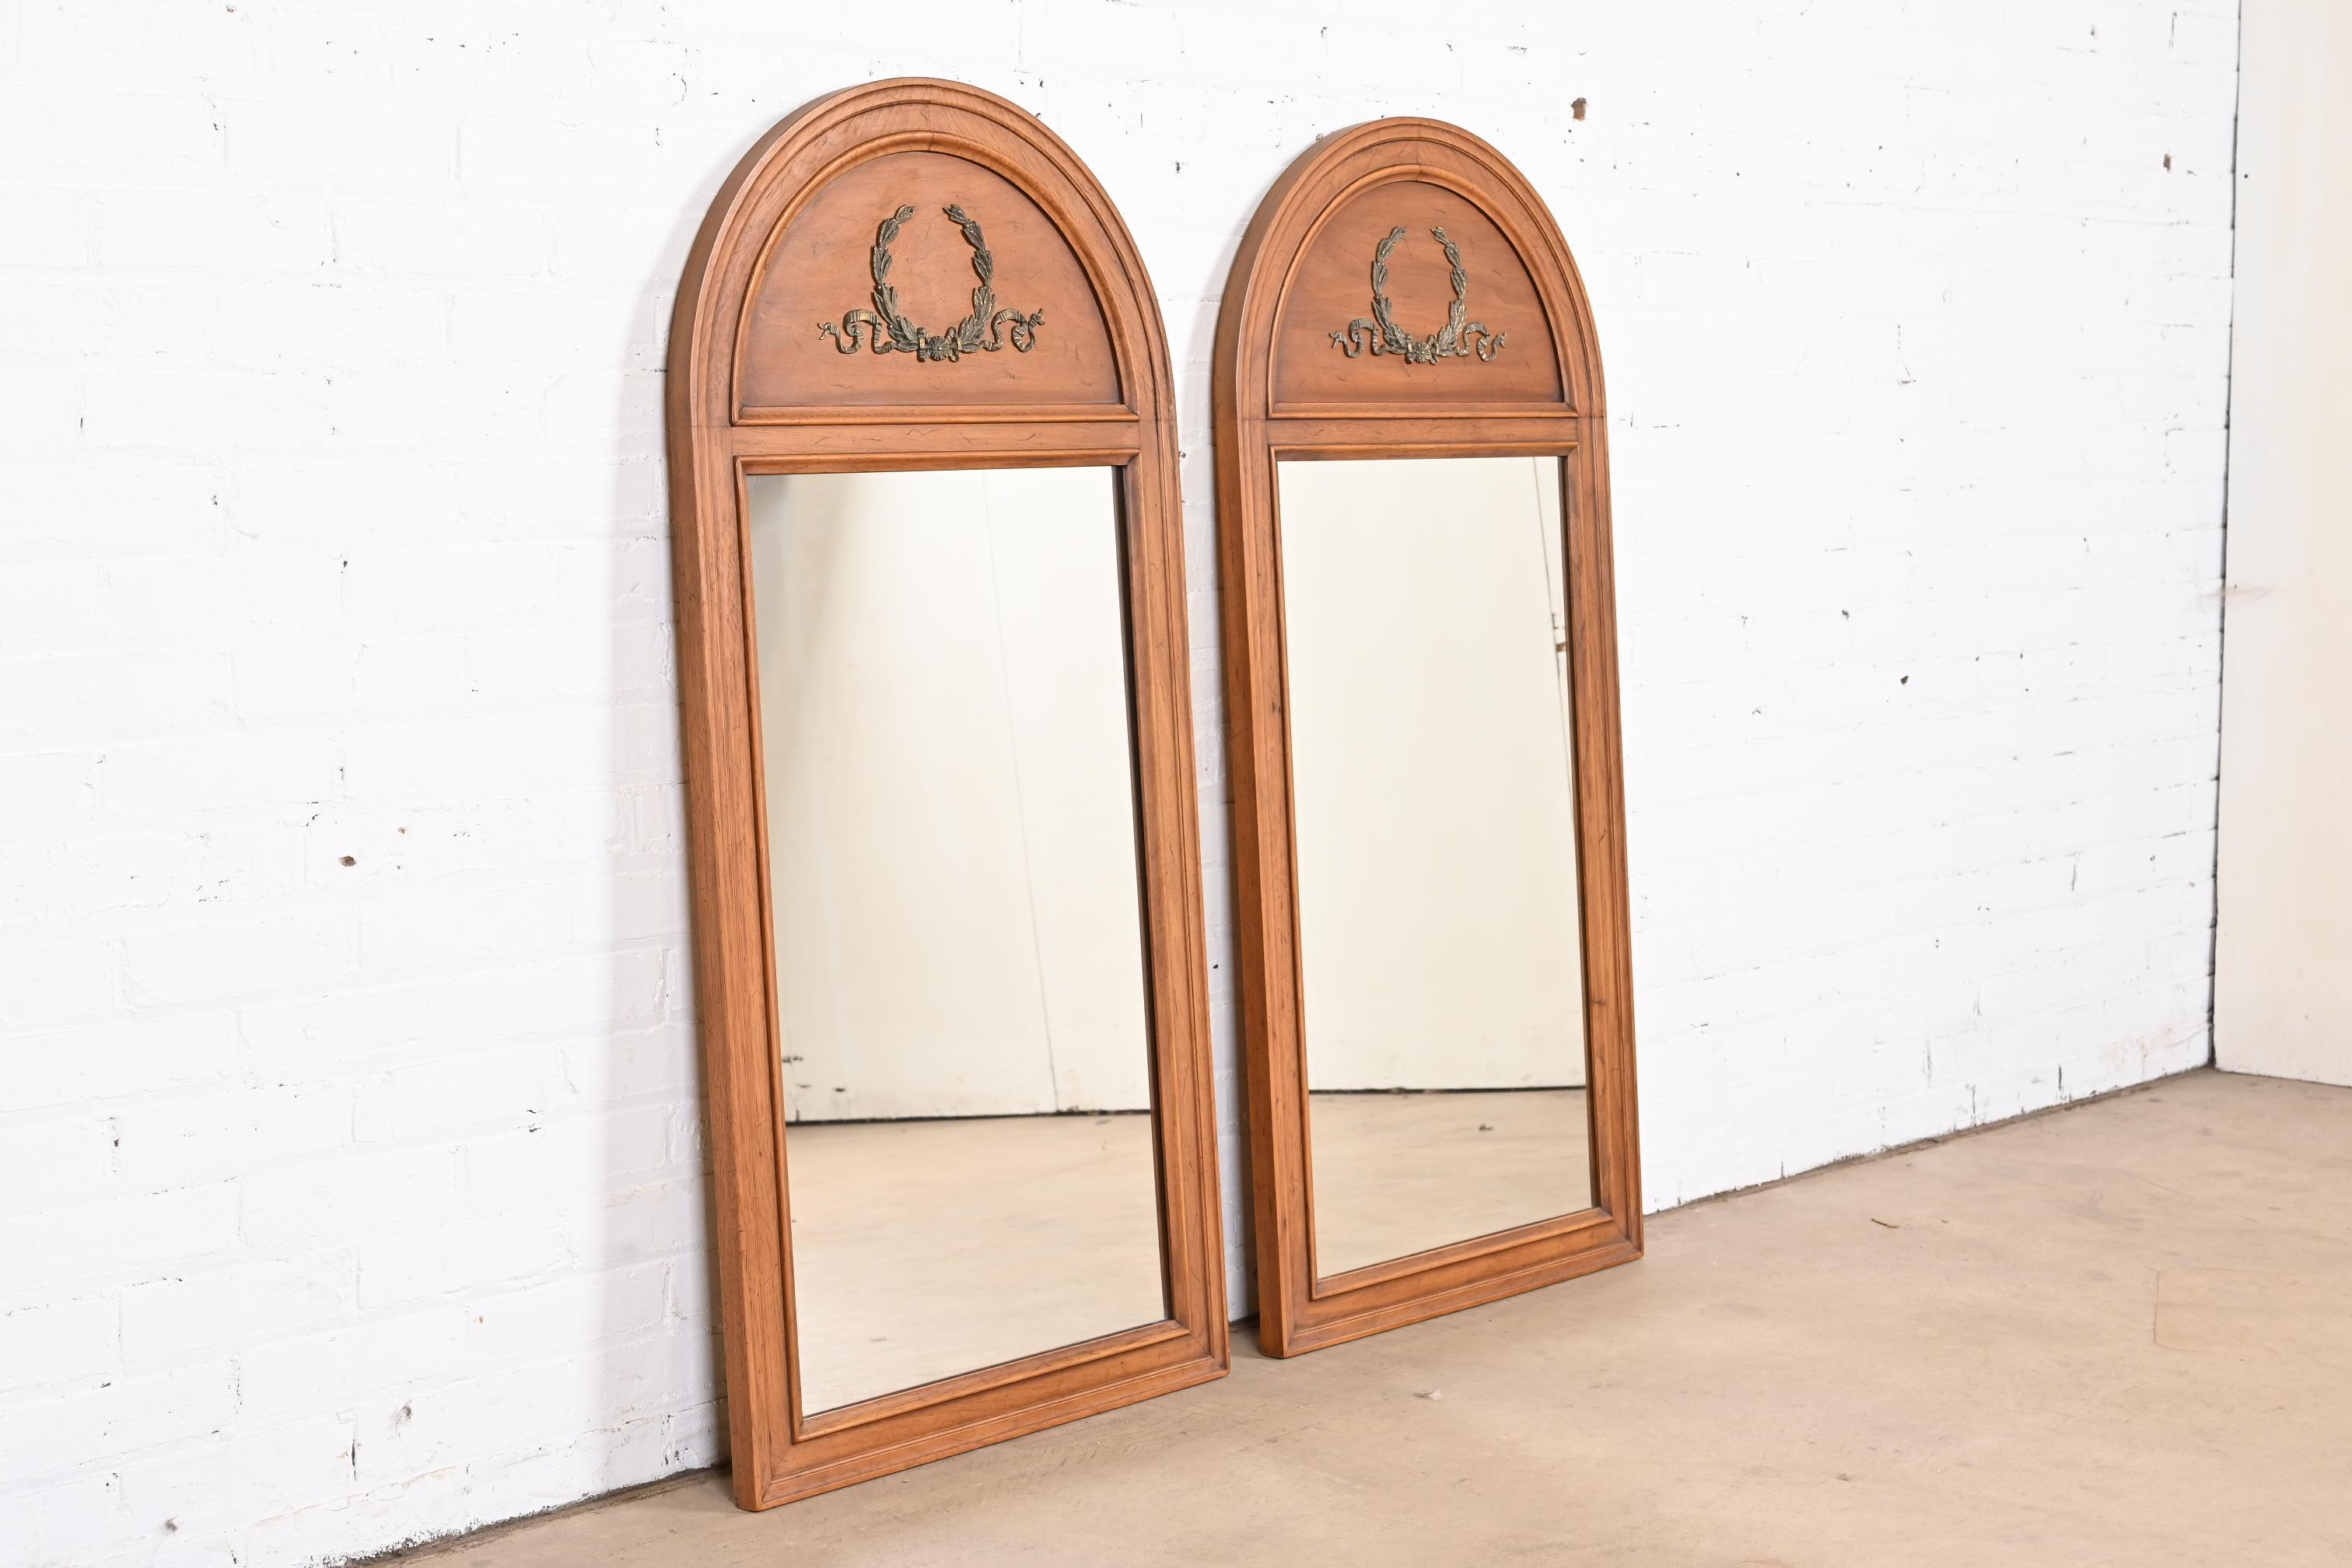 Une superbe paire de grands miroirs muraux arqués de style Louis XVI Régence française.

Par Henredon

USA, 1965

Cadres en noyer, chacun orné de couronnes en laiton montées.

Mesures : 23,38 